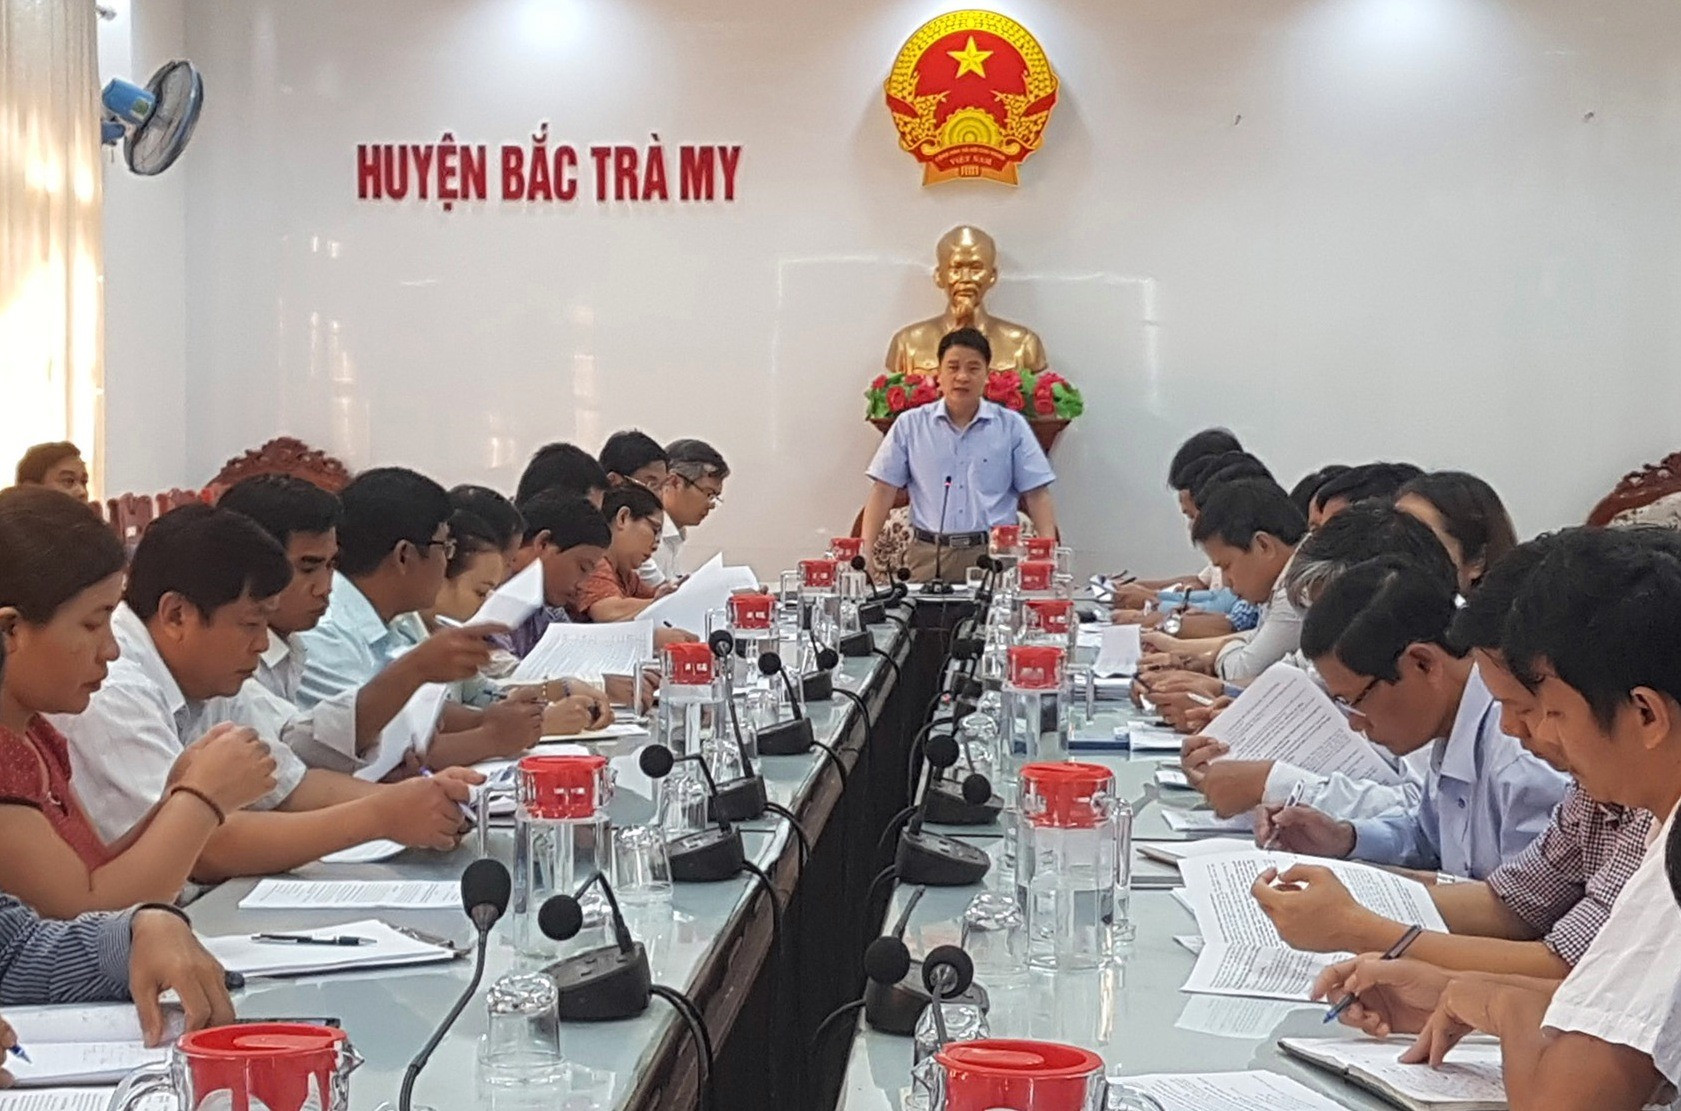 Phó Chủ tịch UBND tỉnh Trần Văn Tân kiểm tra công tác giảm nghèo tại huyện Bắc Trà My. Ảnh: D.L